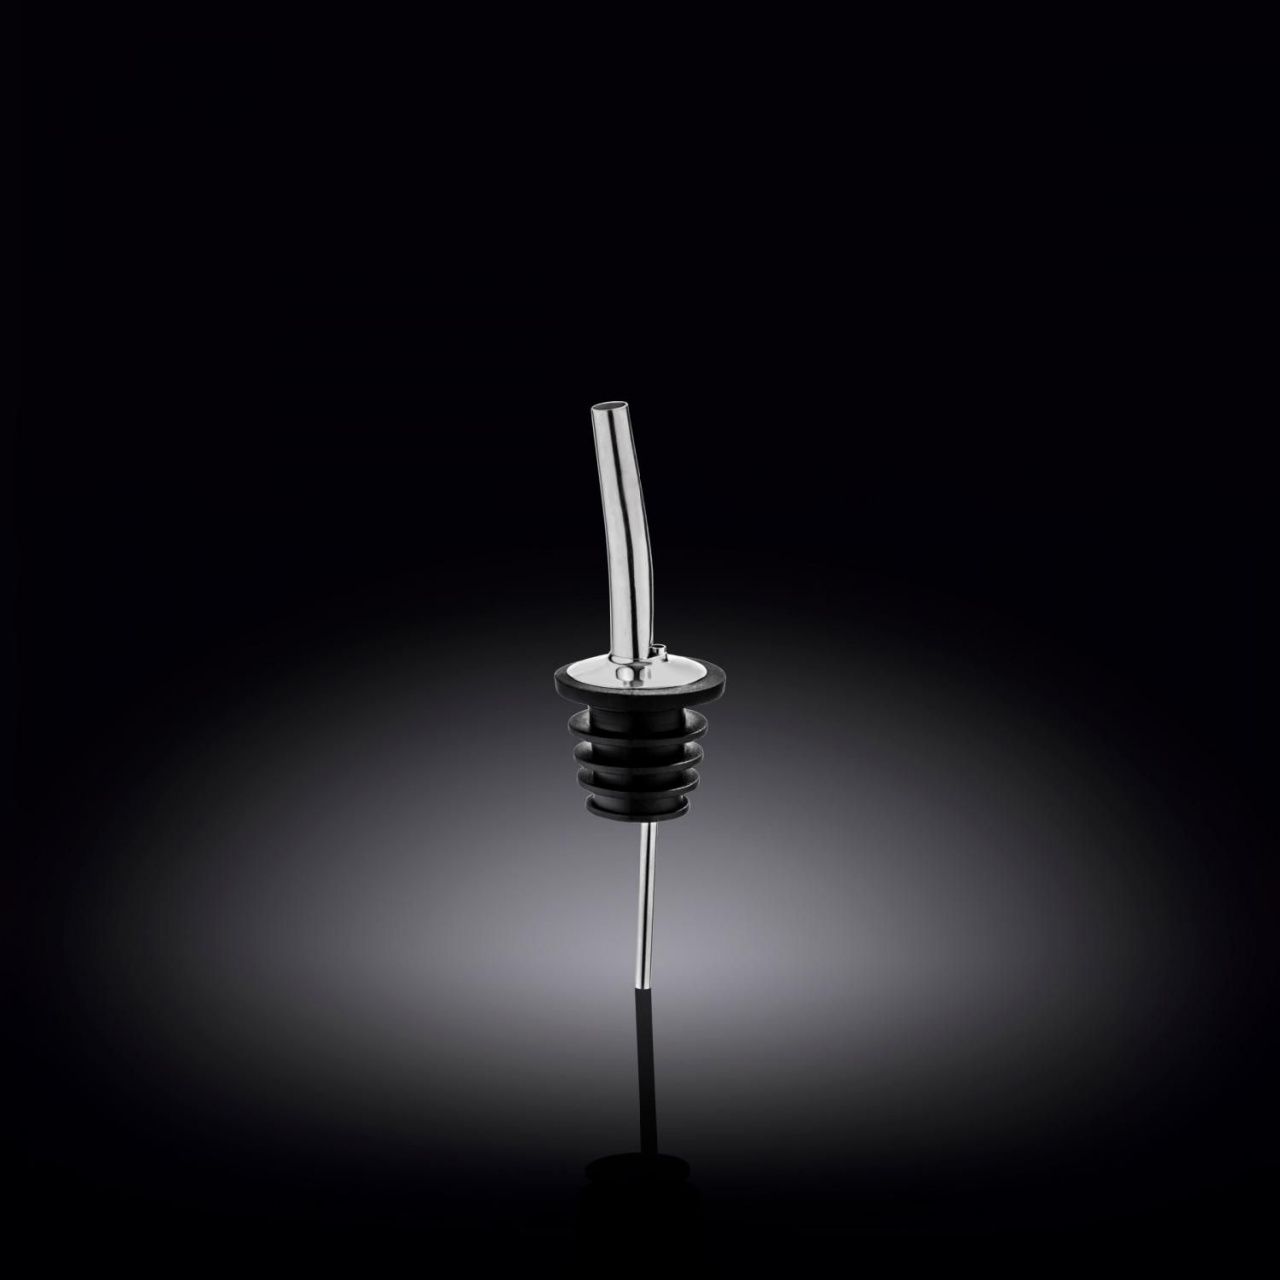 Гейзер (дозатор) серебро WL-552410/А 2,8*11,3см (нержавеющая сталь)